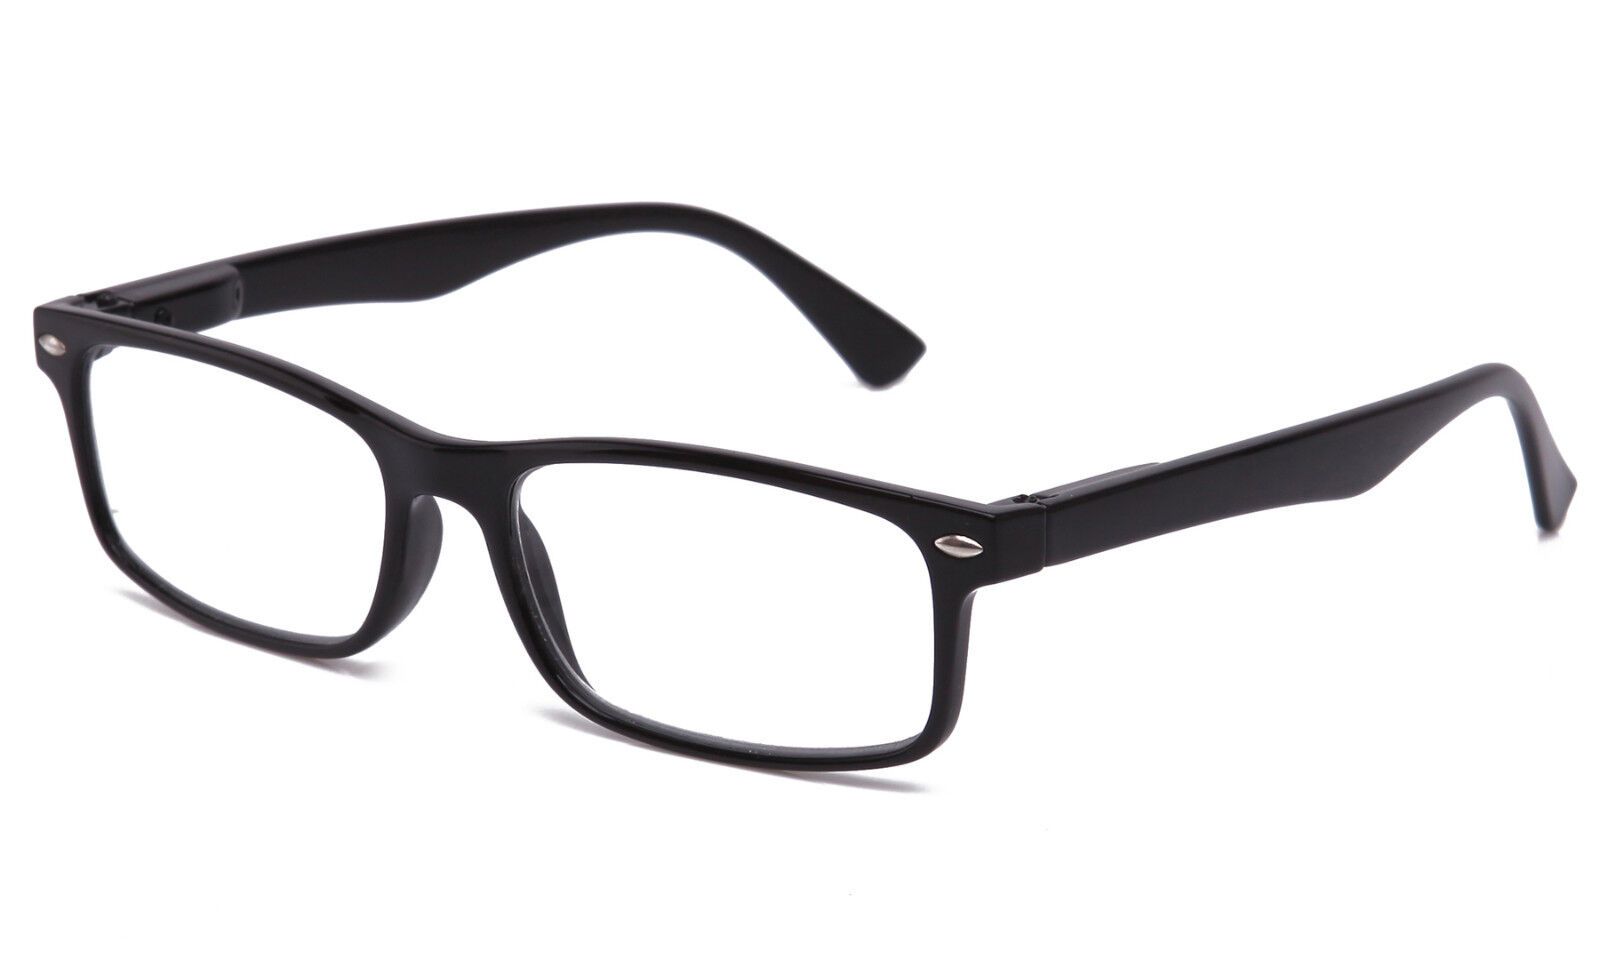 New Clear Lens Glasses Rectangular Frame Spring Hinge Fake Eyewear UV 100%